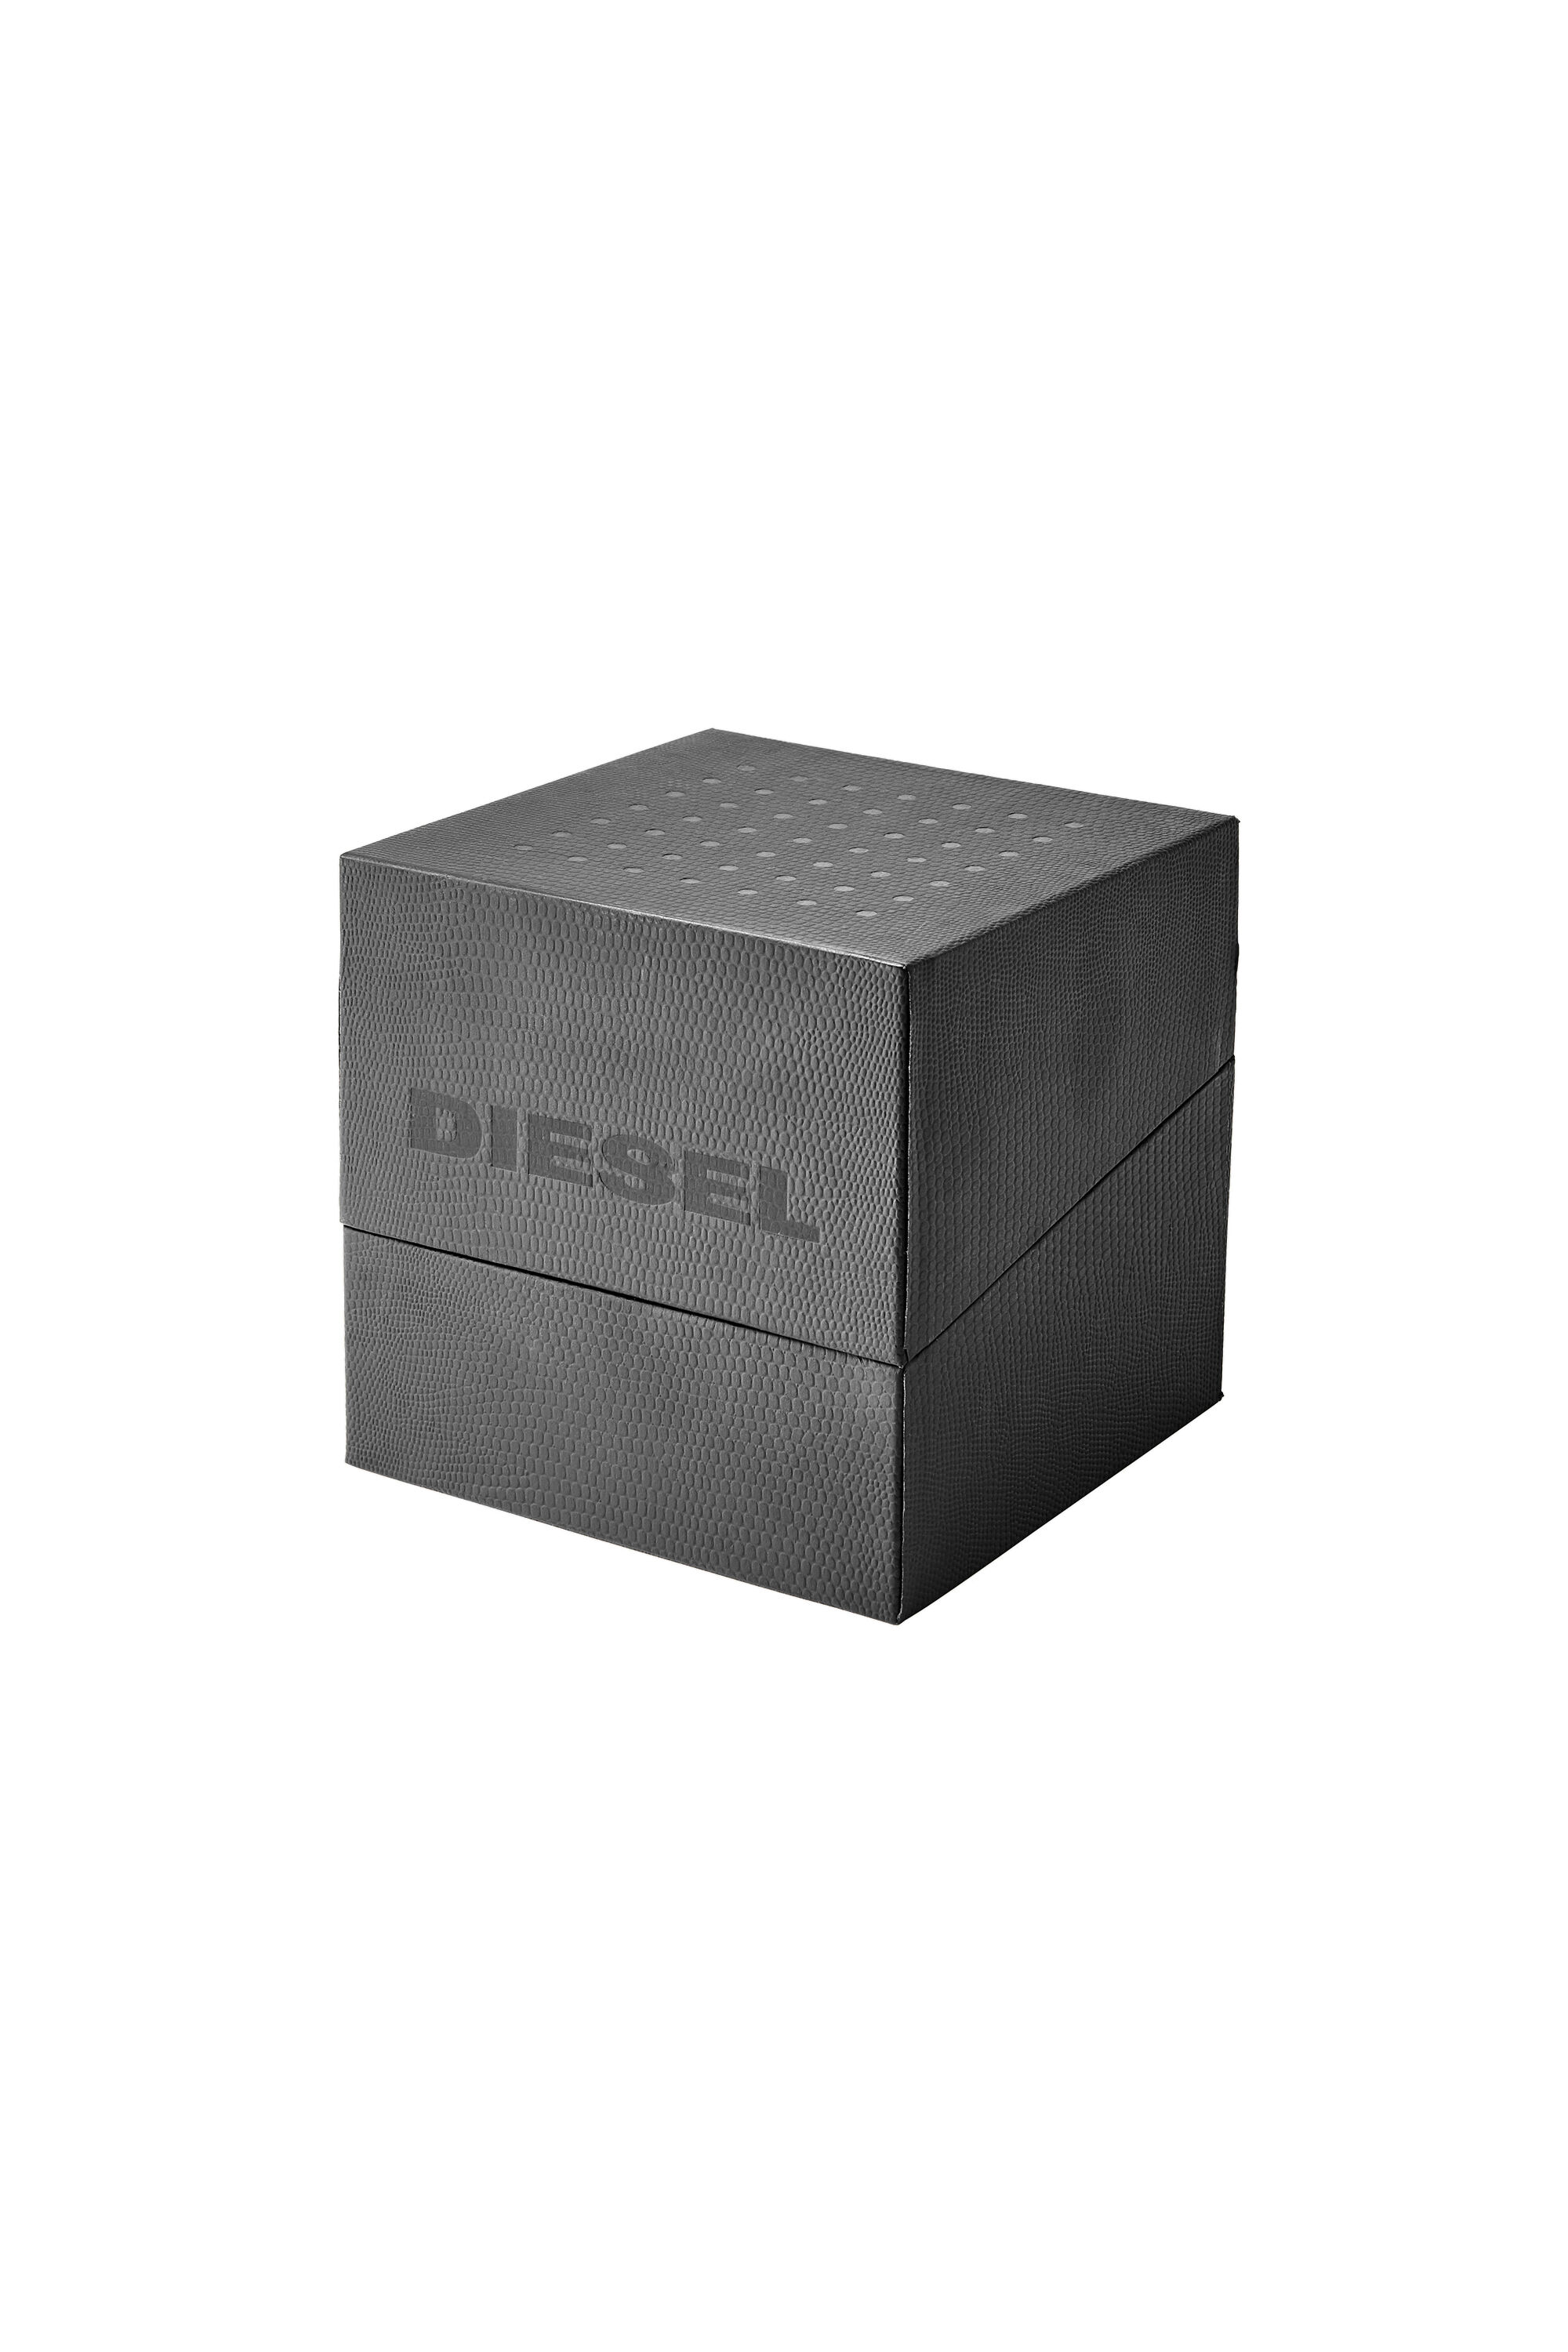 Diesel - DZ4523, Grigio - Image 5